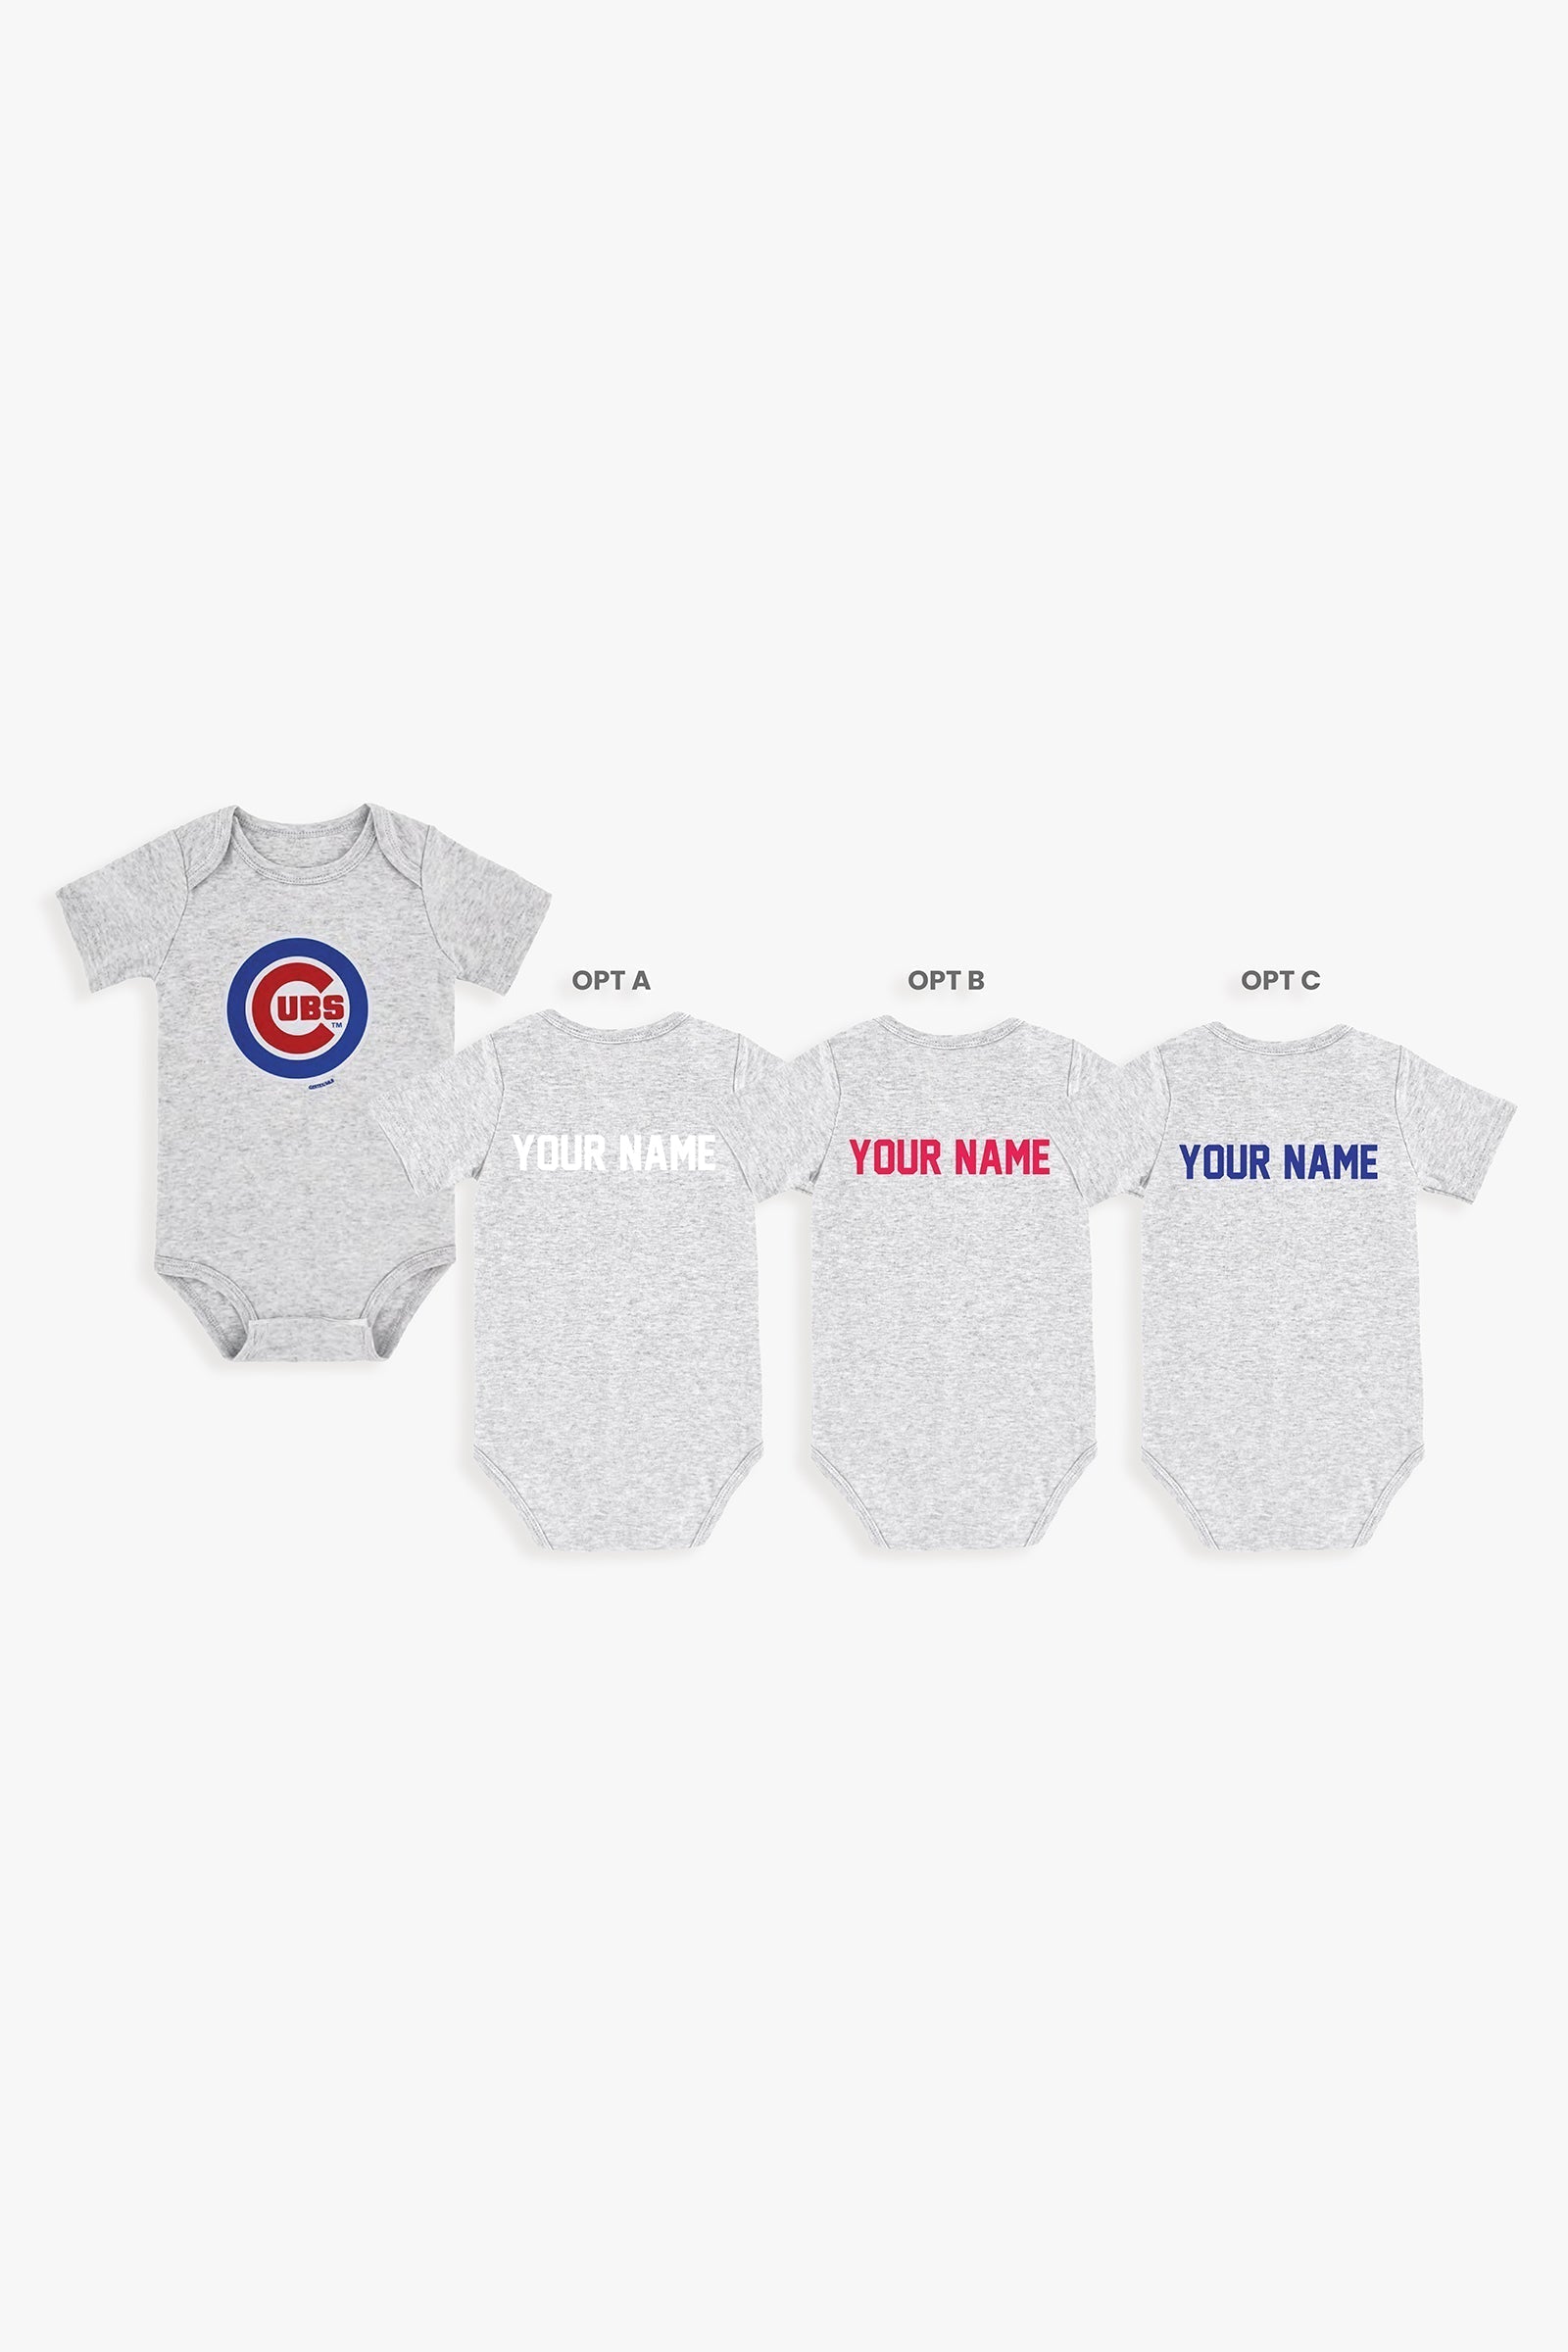 Gertex Customizable MLB Baby Onesie Bodysuit in Grey (18-24 Months)